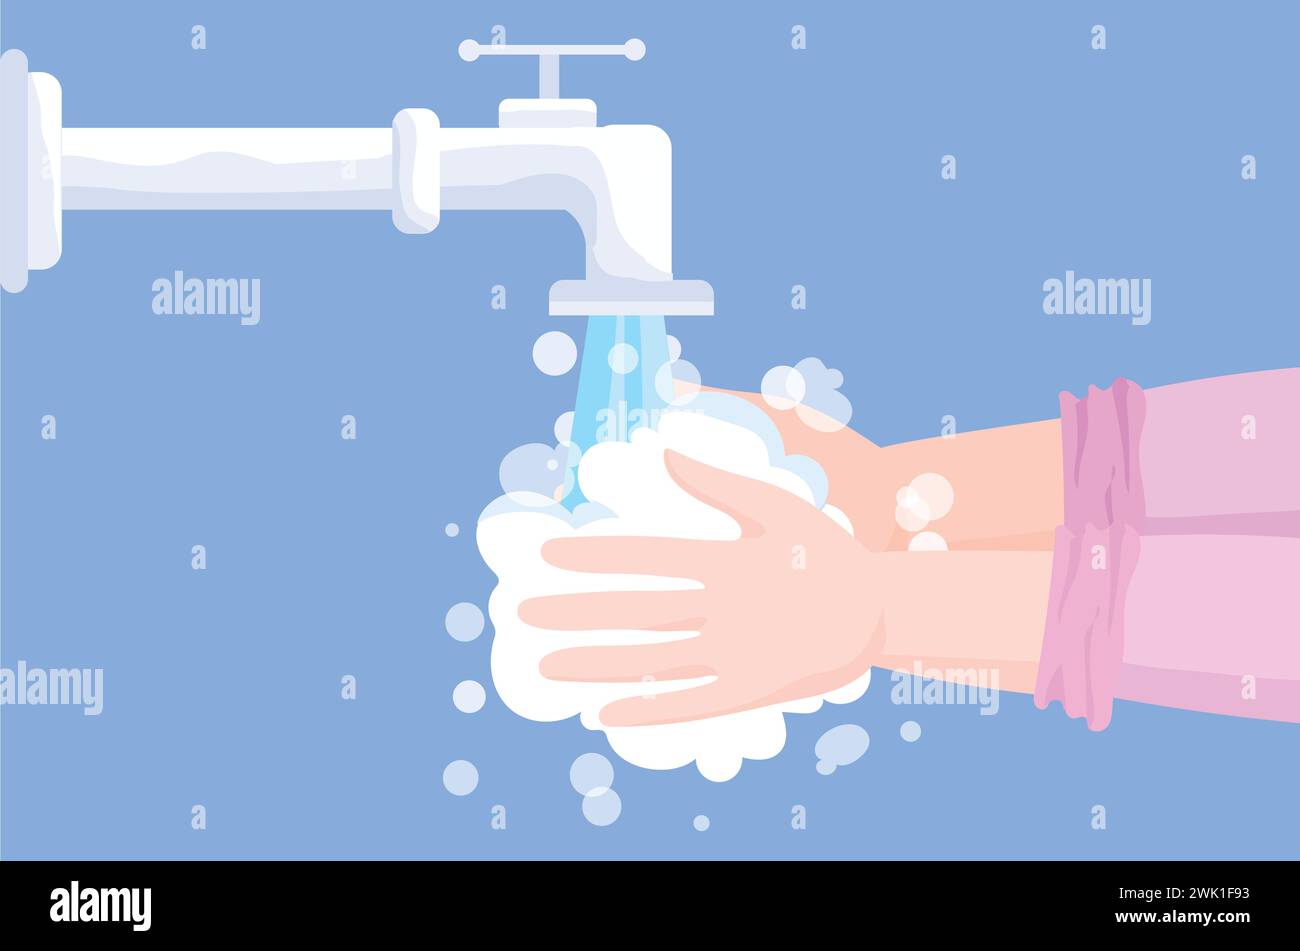 Illustration vectorielle du lavage des mains sous un robinet en cours d'exécution. Une paire de mains sont dans des mousses savonneuses. Concepts de santé, de soins personnels, de propreté et d'hygiène. Illustration de Vecteur